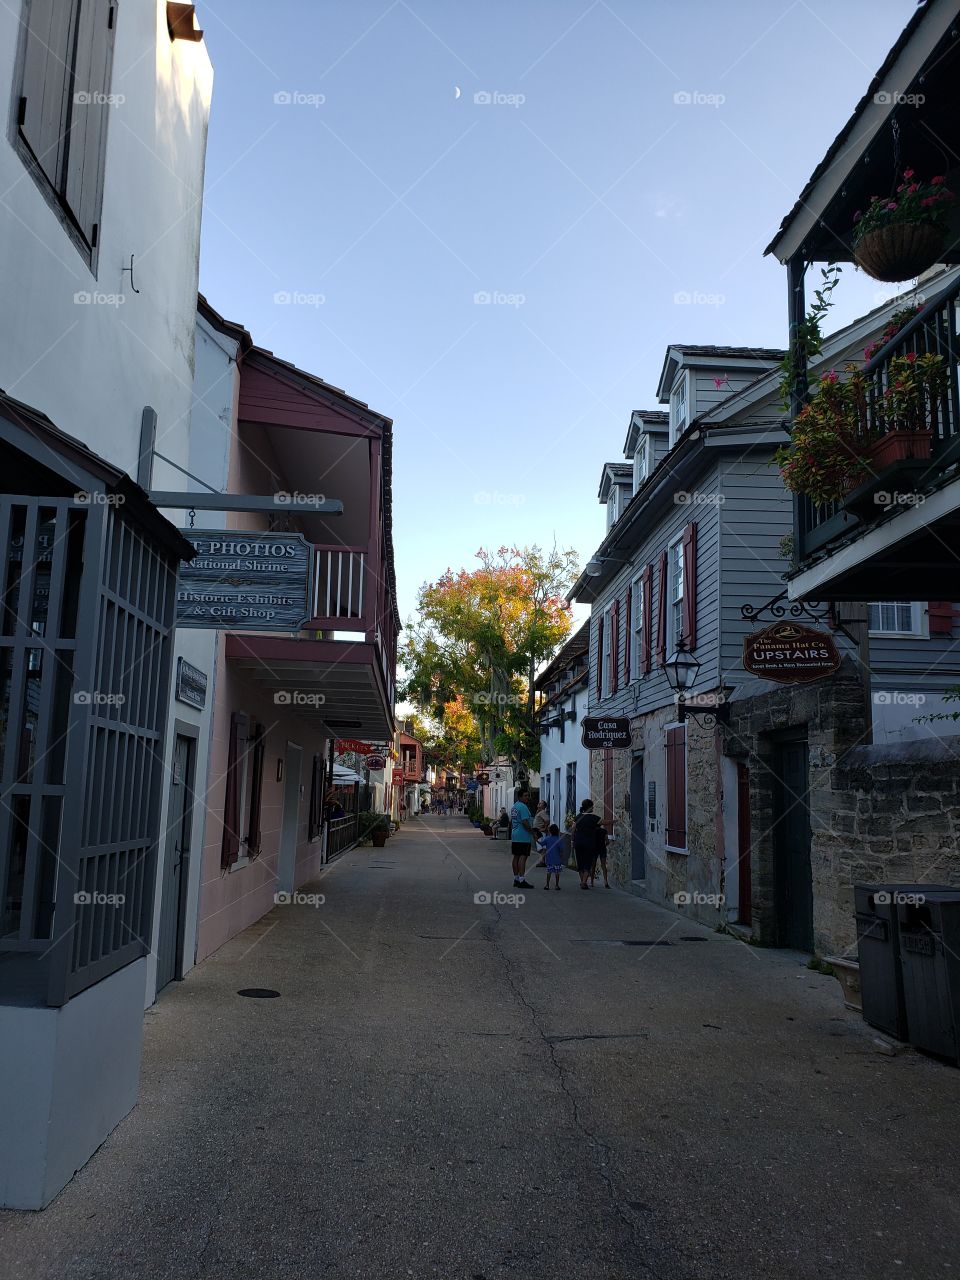 St Augustine's street